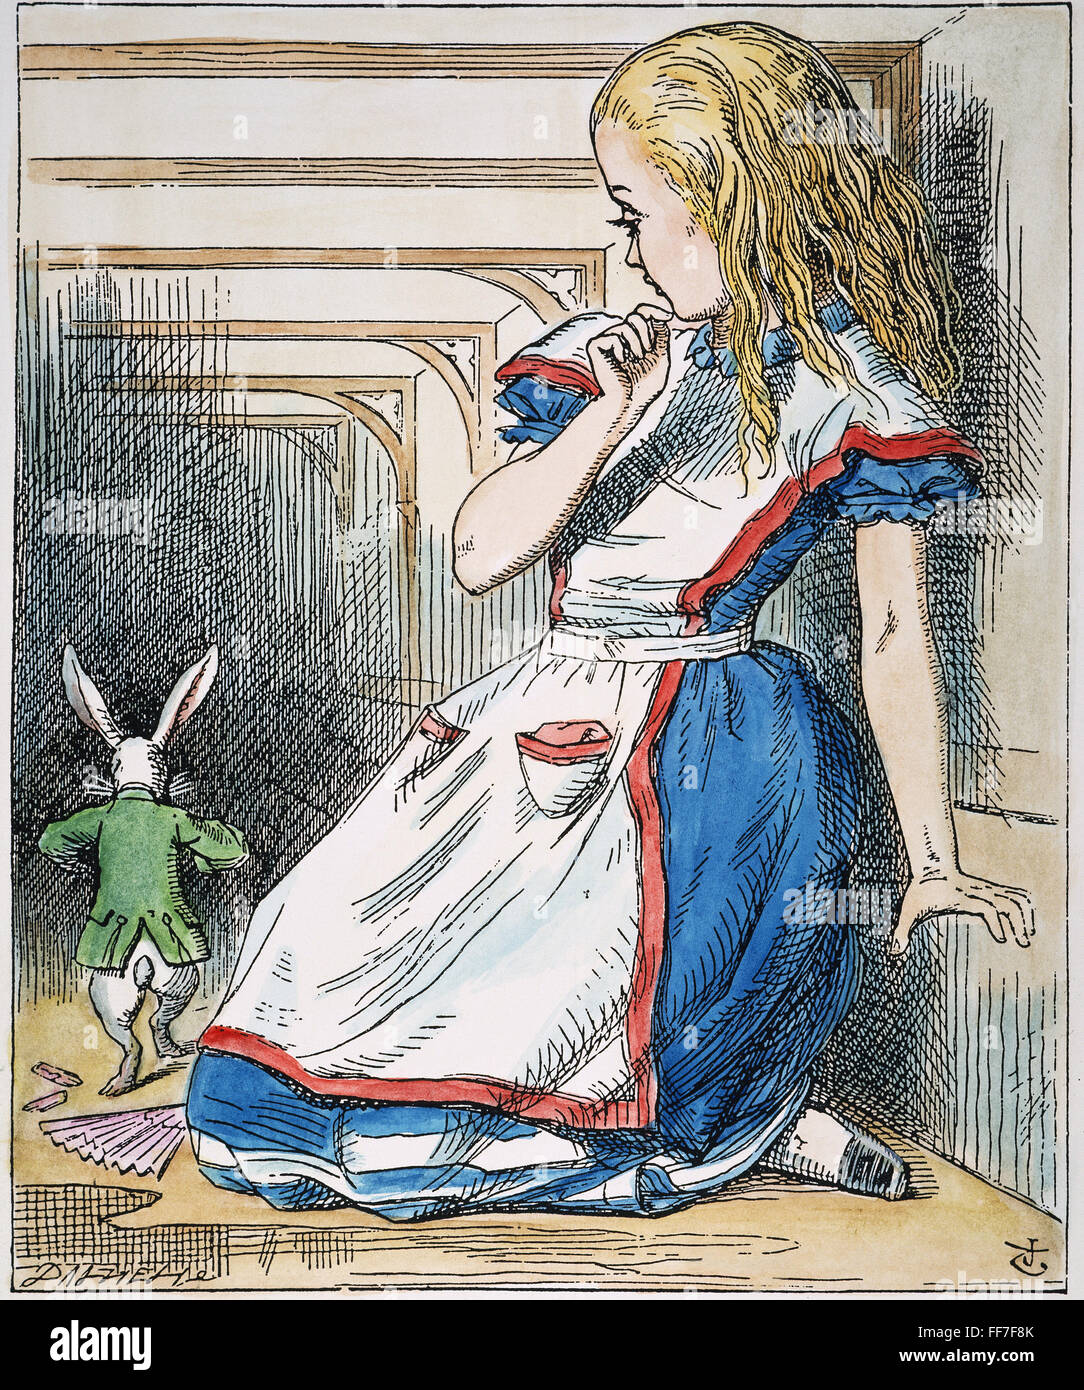 ALICE IN Wonderland, 1865./nAlice y el conejo blanco. Ilustración de John Tenniel desde la primera edición de Lewis Carroll "Alice's Adventures in Wonderland", 1865. Foto de stock